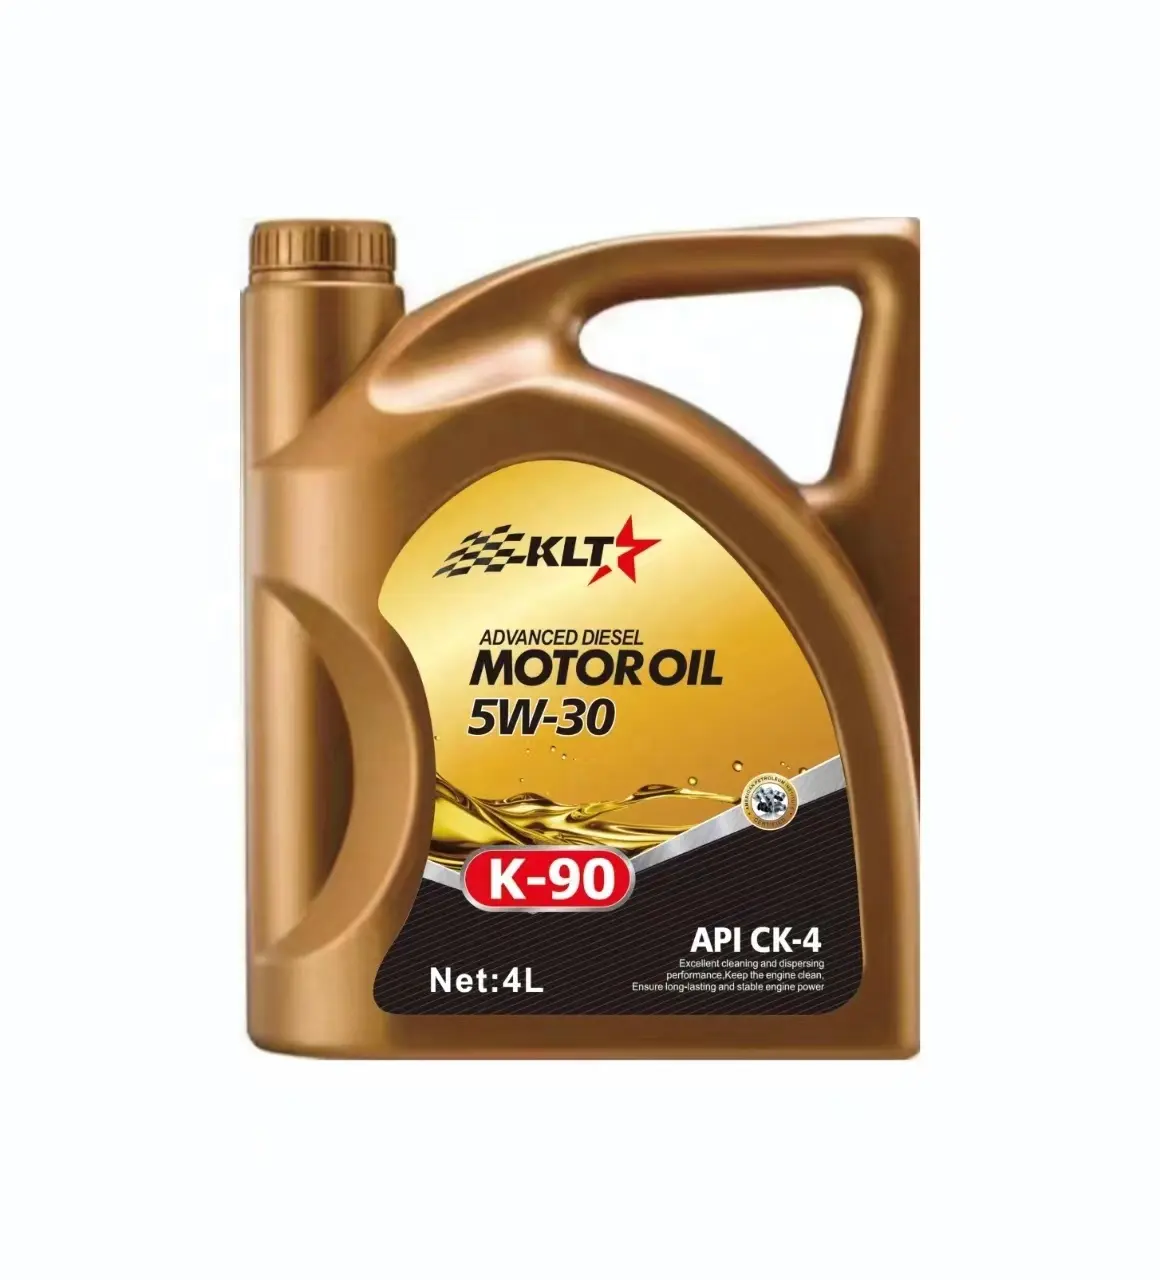 केएलटी ब्रांड प्रीमियम 5w30 सिंथेटिक मोटर ऑयल ऑटोमोटिव स्नेहक तेल थोक के लिए पूरी तरह से सिंथेटिक उत्कृष्ट सुरक्षा